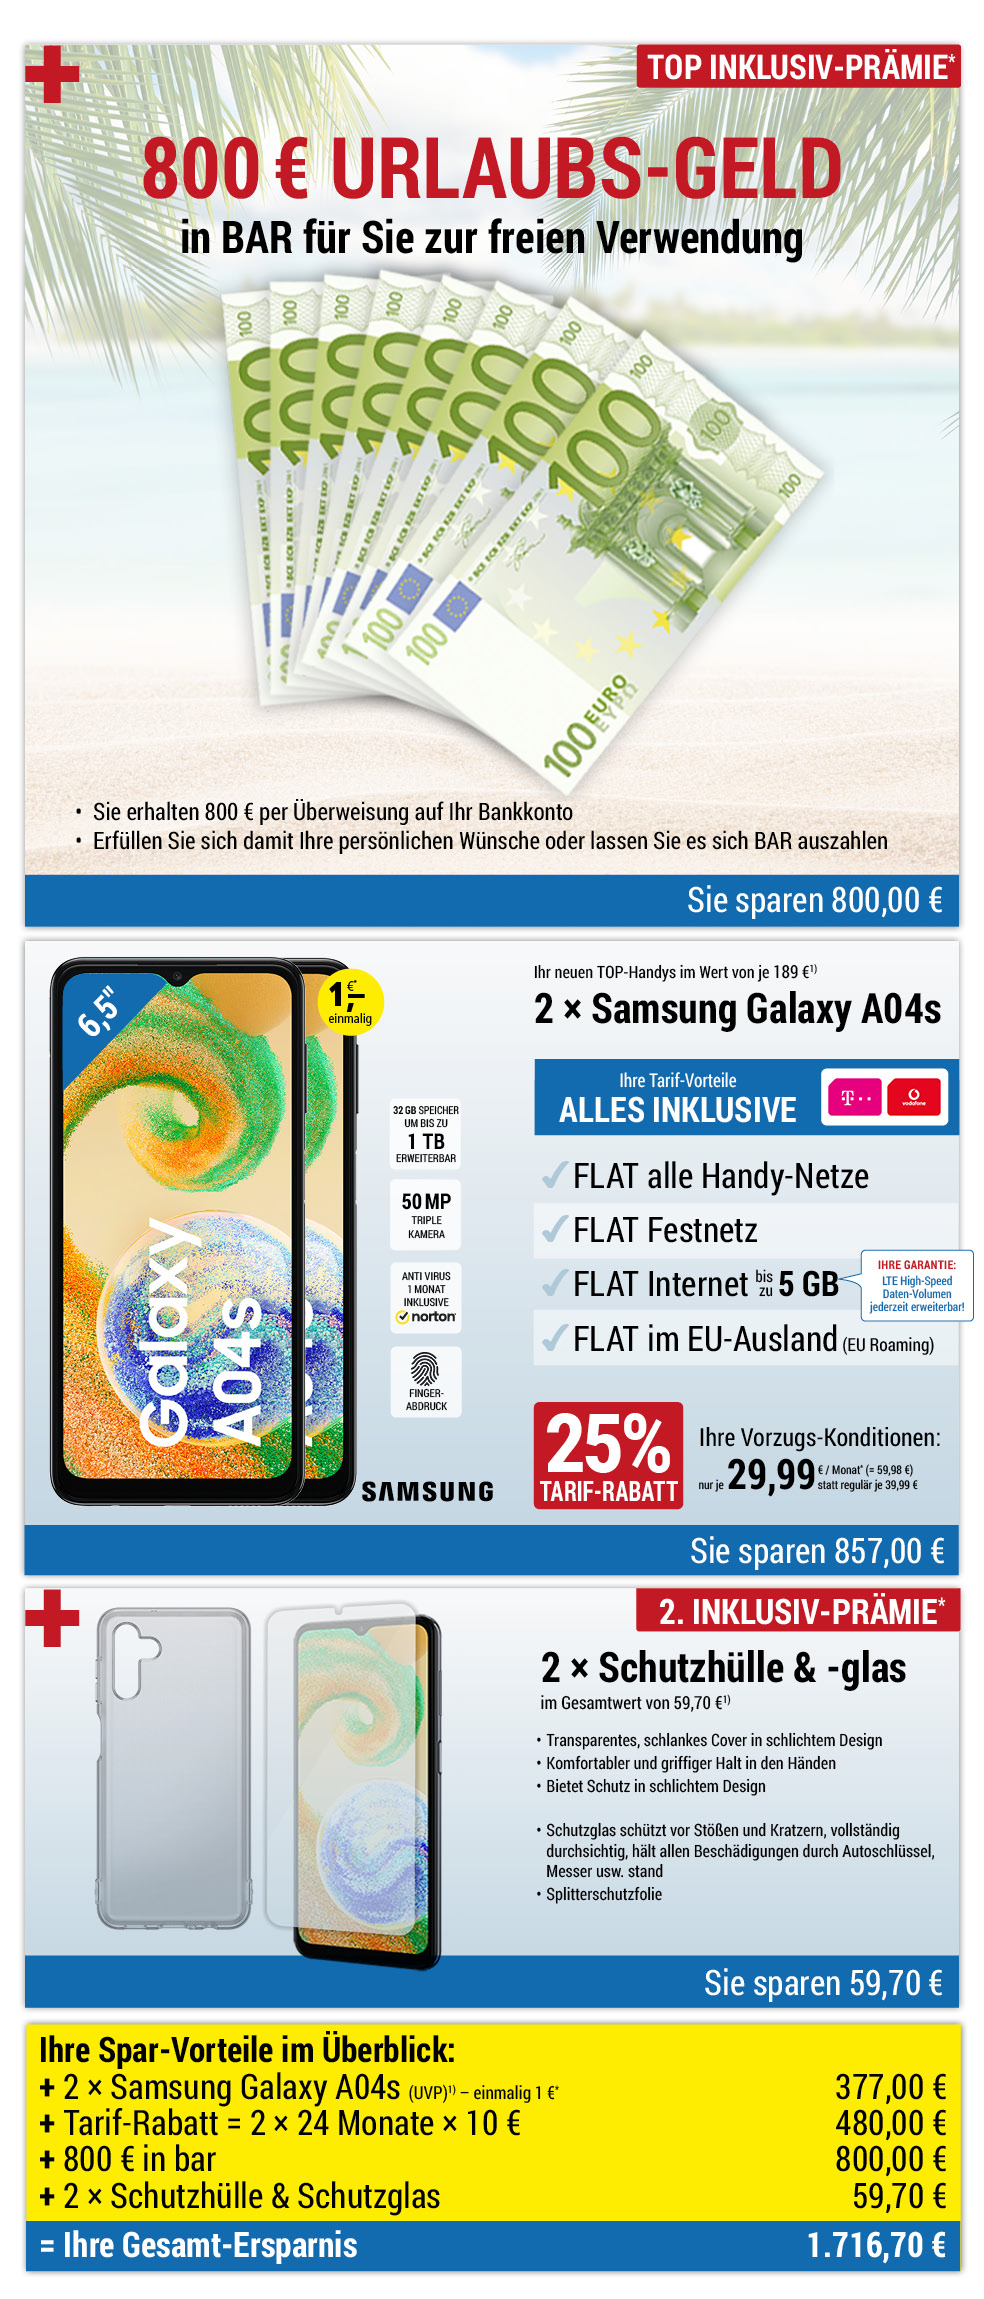 Für nur 1 €*: 2 × Samsung Galaxy A04s + Zubehör + 800 € bar INKLUSIVE + Handyverträge mit ALL NET FLAT für je 29,99 €/Monat